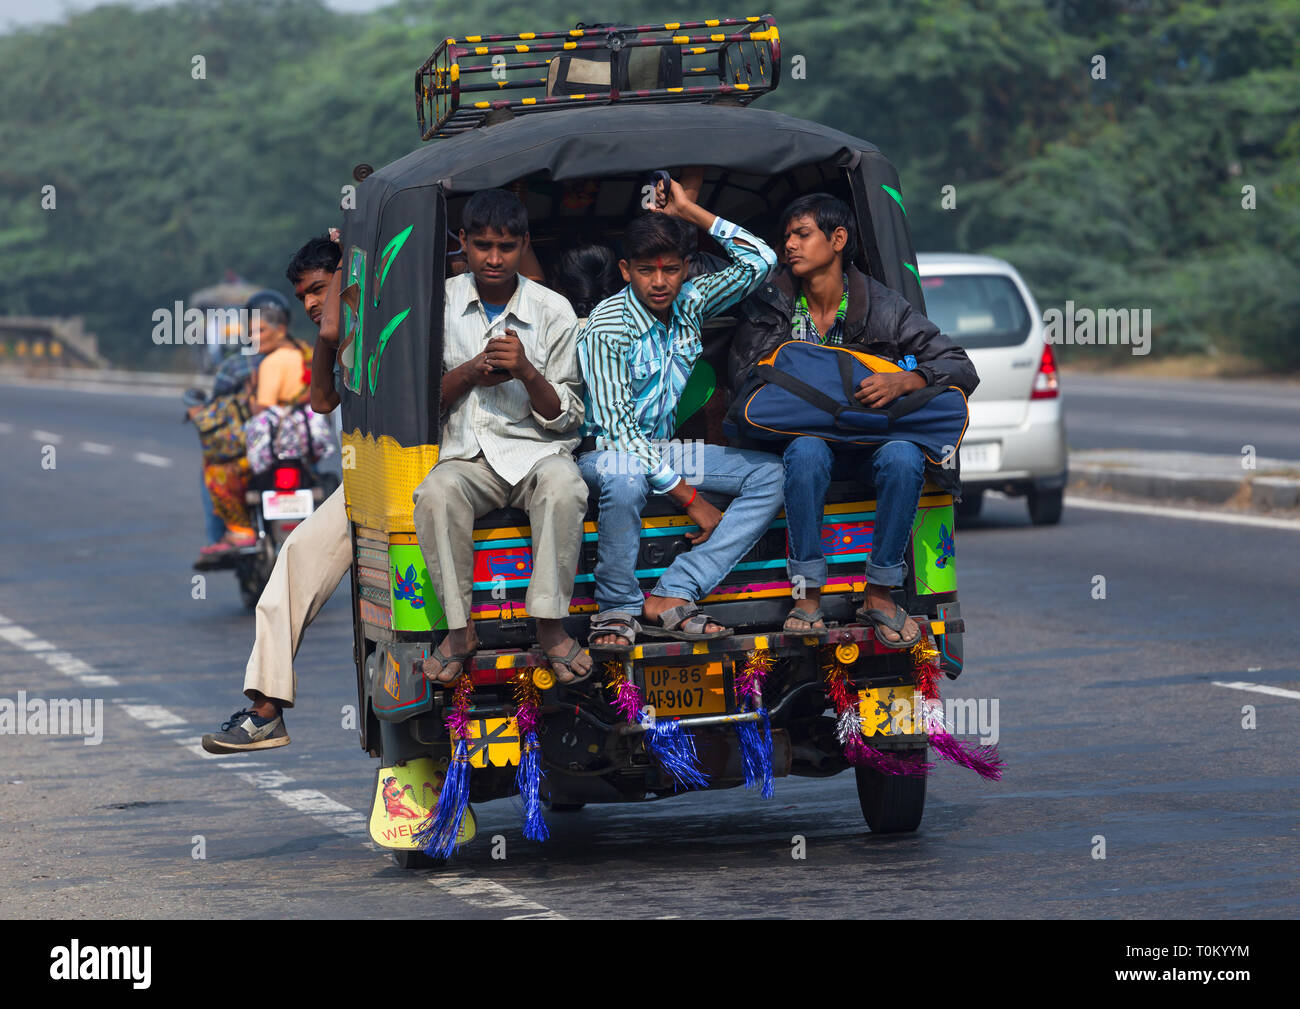 AGRA, INDIEN - November 15, 2012: Traditionelle indische Familie fährt mit dem Auto. Indische Menschen und ihre bunte Kultur Stockfoto